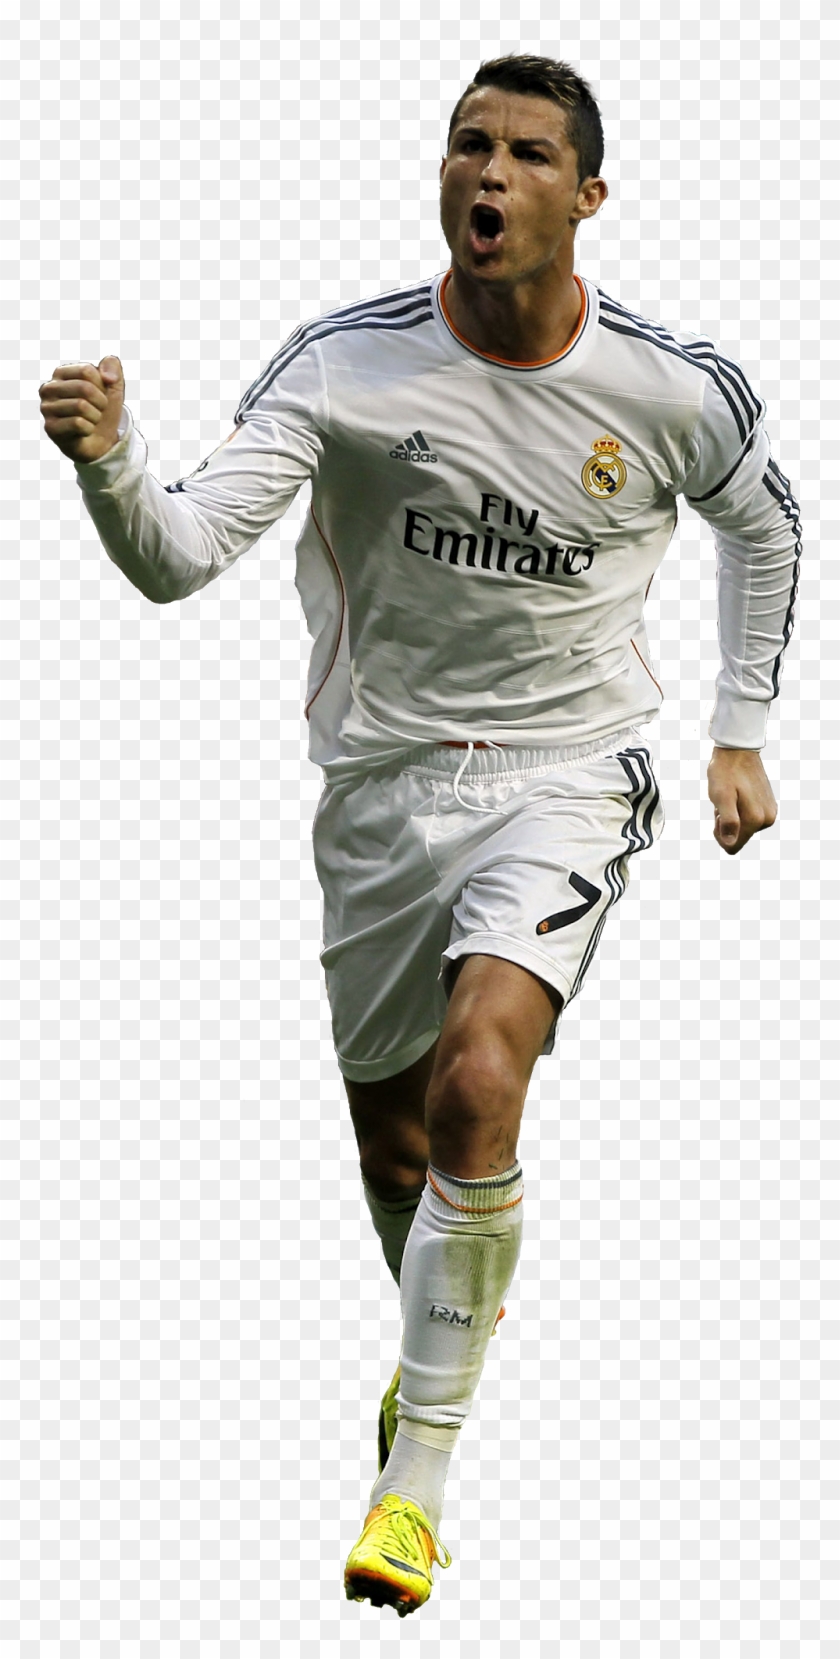 Cristiano Ronaldo No Background Clipart #455211